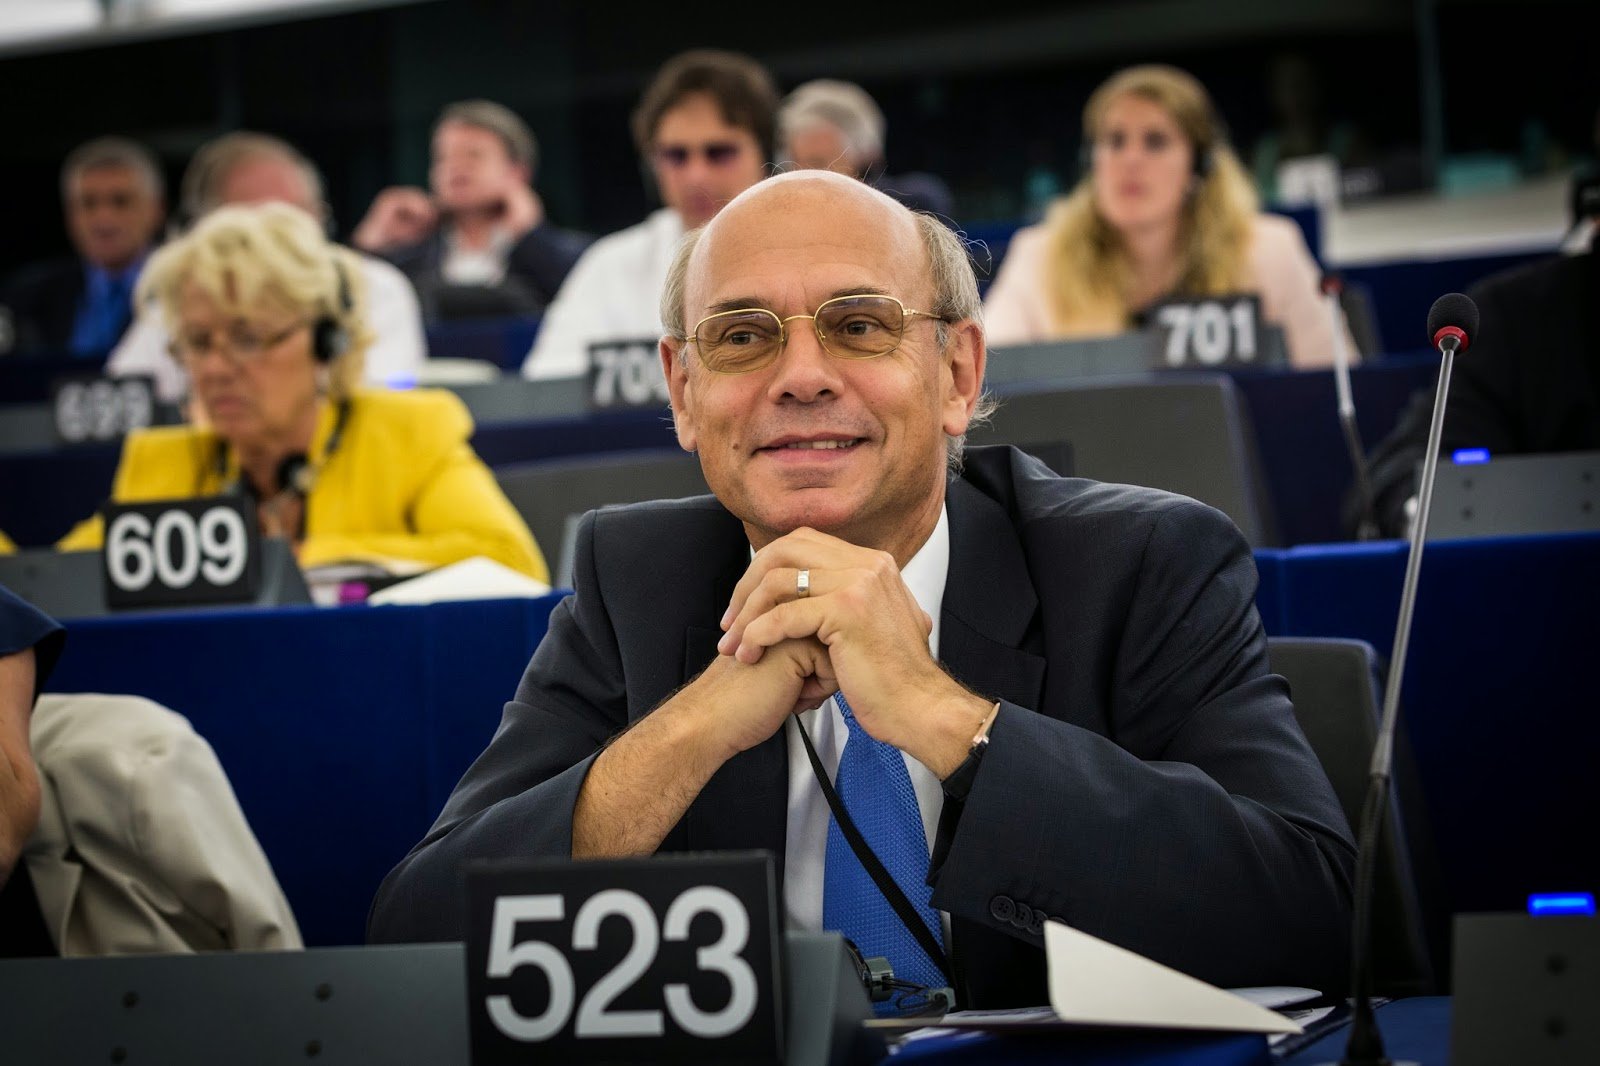 Jean-Luc Schaffhauser in the European Parliament